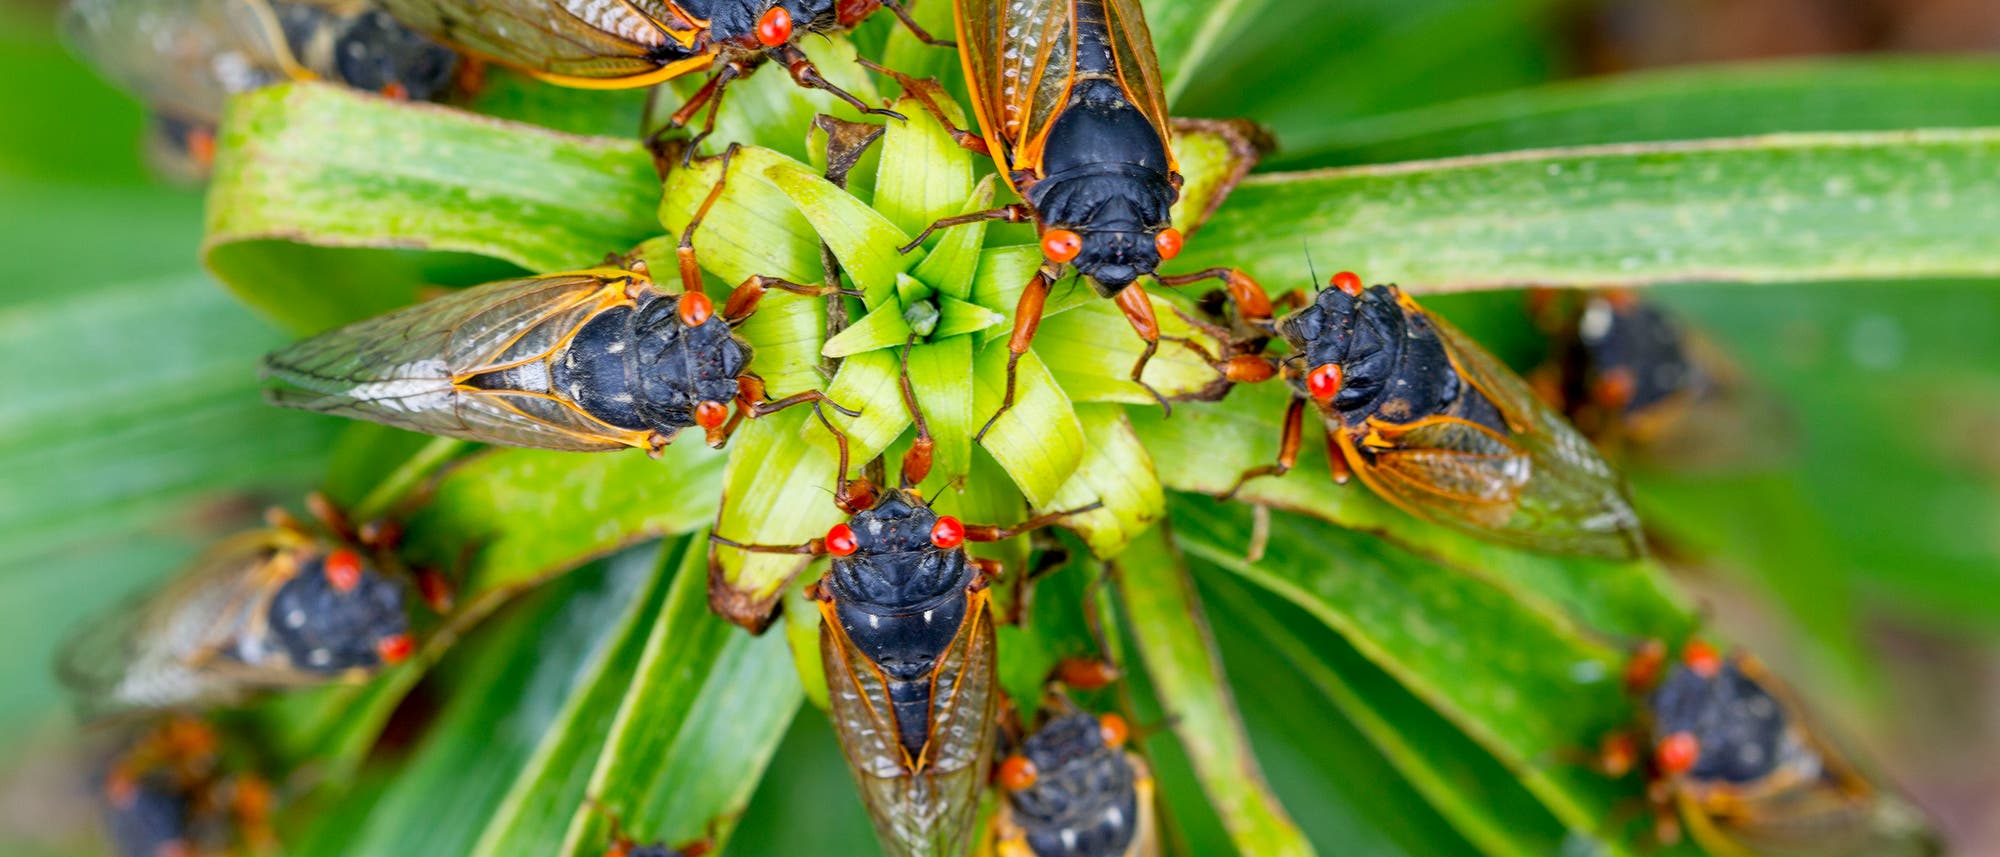 Zahlreiche Zikaden mit schwarzem Körper, durchsichtigen Flügeln und roten Augen sitzen auf einer grünen Pflanze, deren Blätter ringsherum angeordnet sind